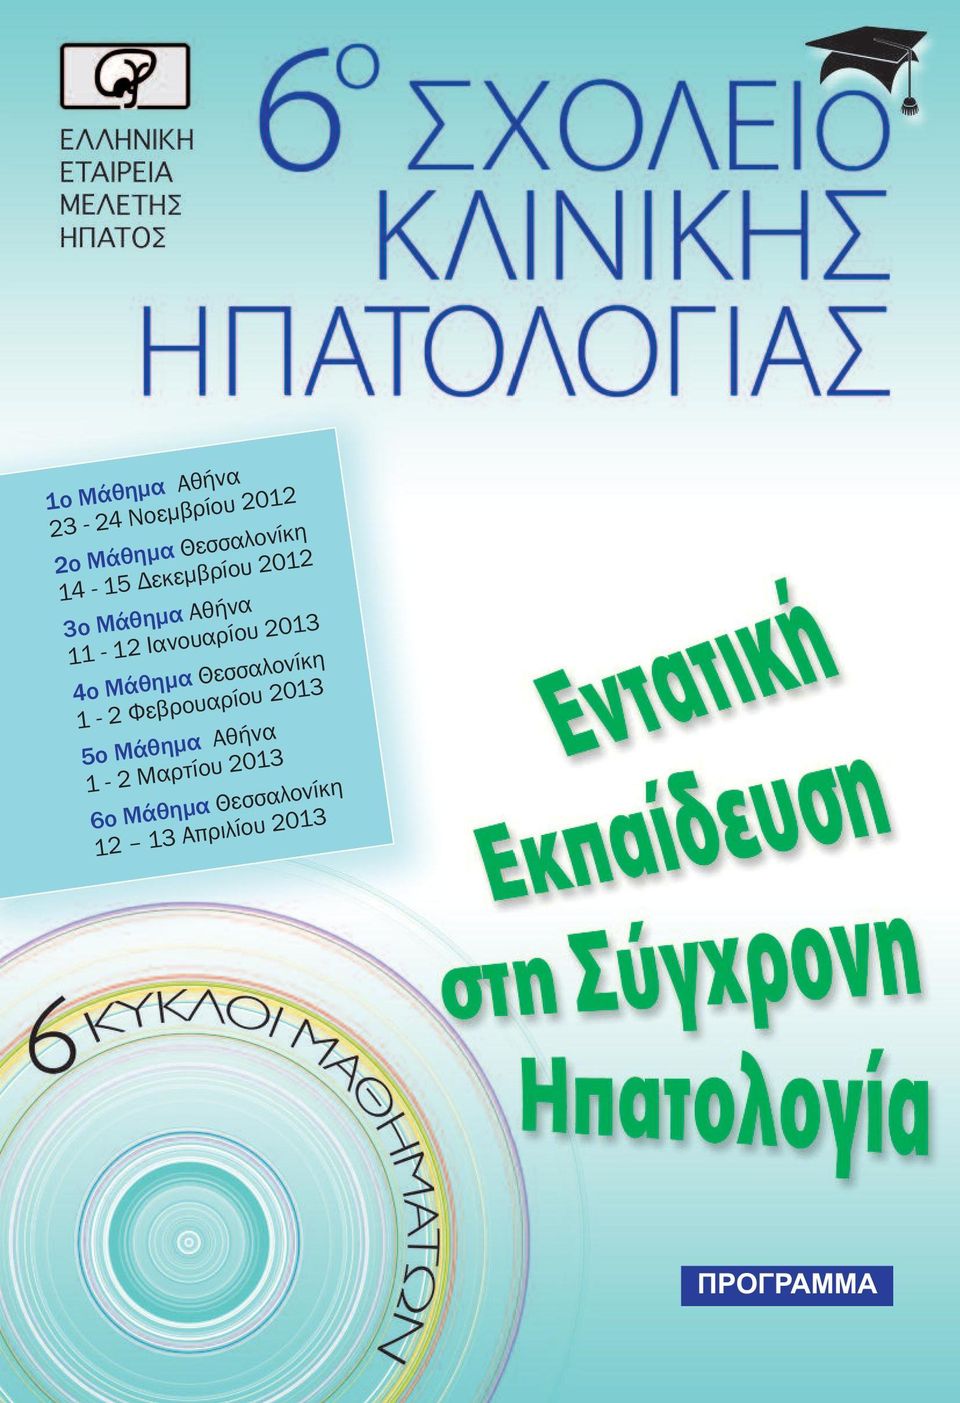 4ο Μάθημα Θεσσαλονίκη 1-2 Φεβρουαρίου 2013 5ο Μάθημα Αθήνα